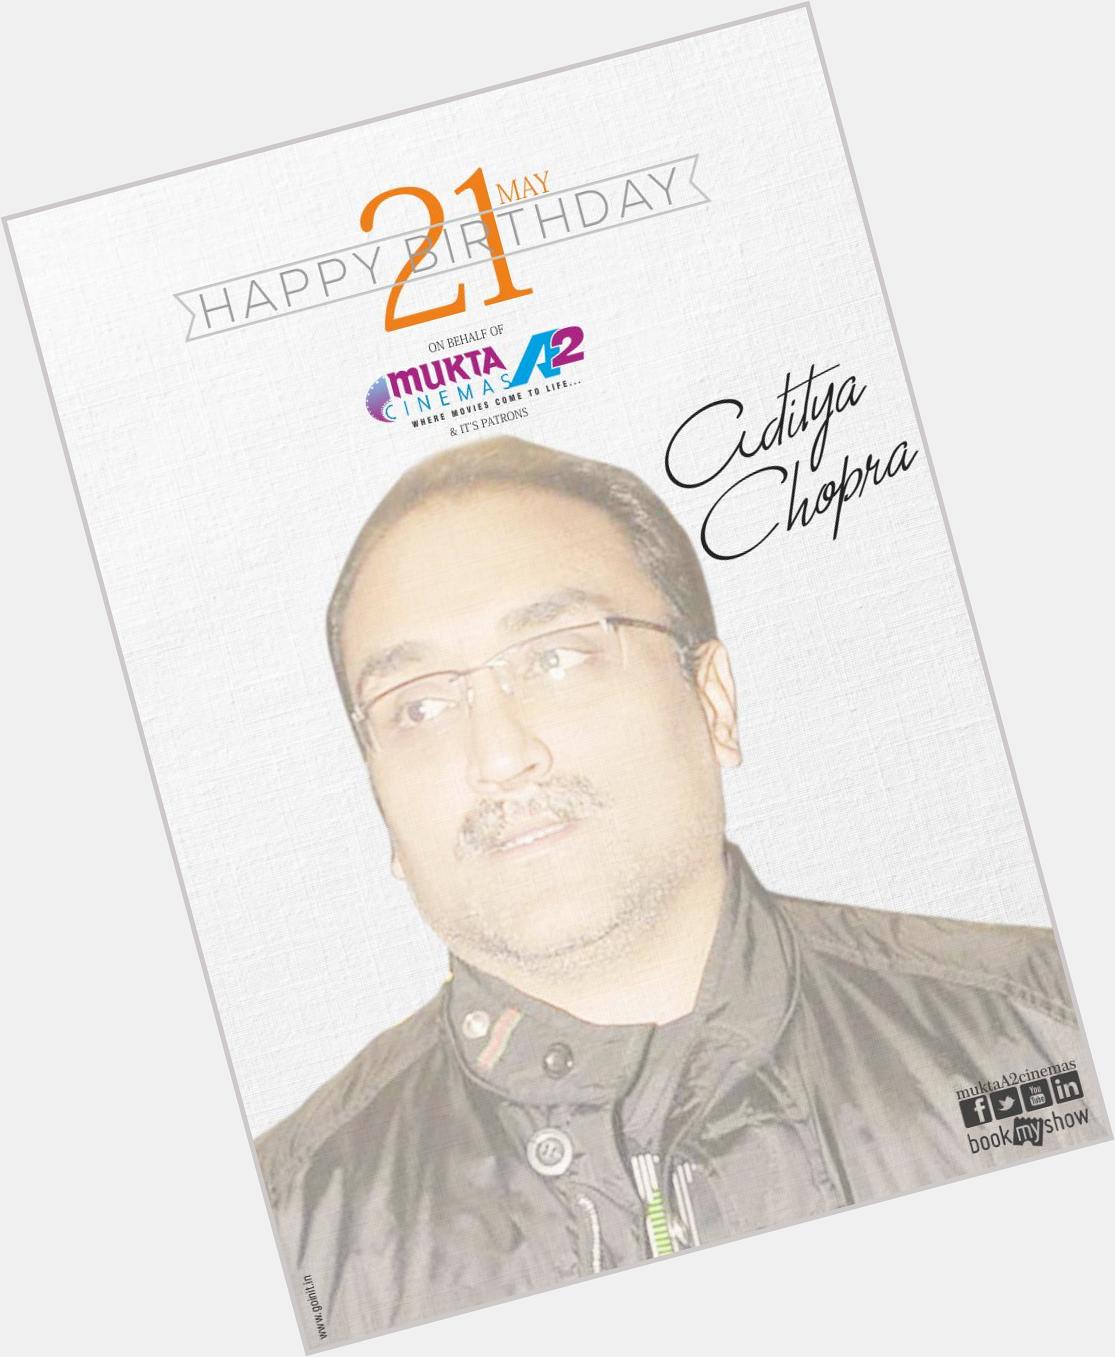 Mukta A2 Cinemas would like to wish Chopra a  very Happy Birthday! 